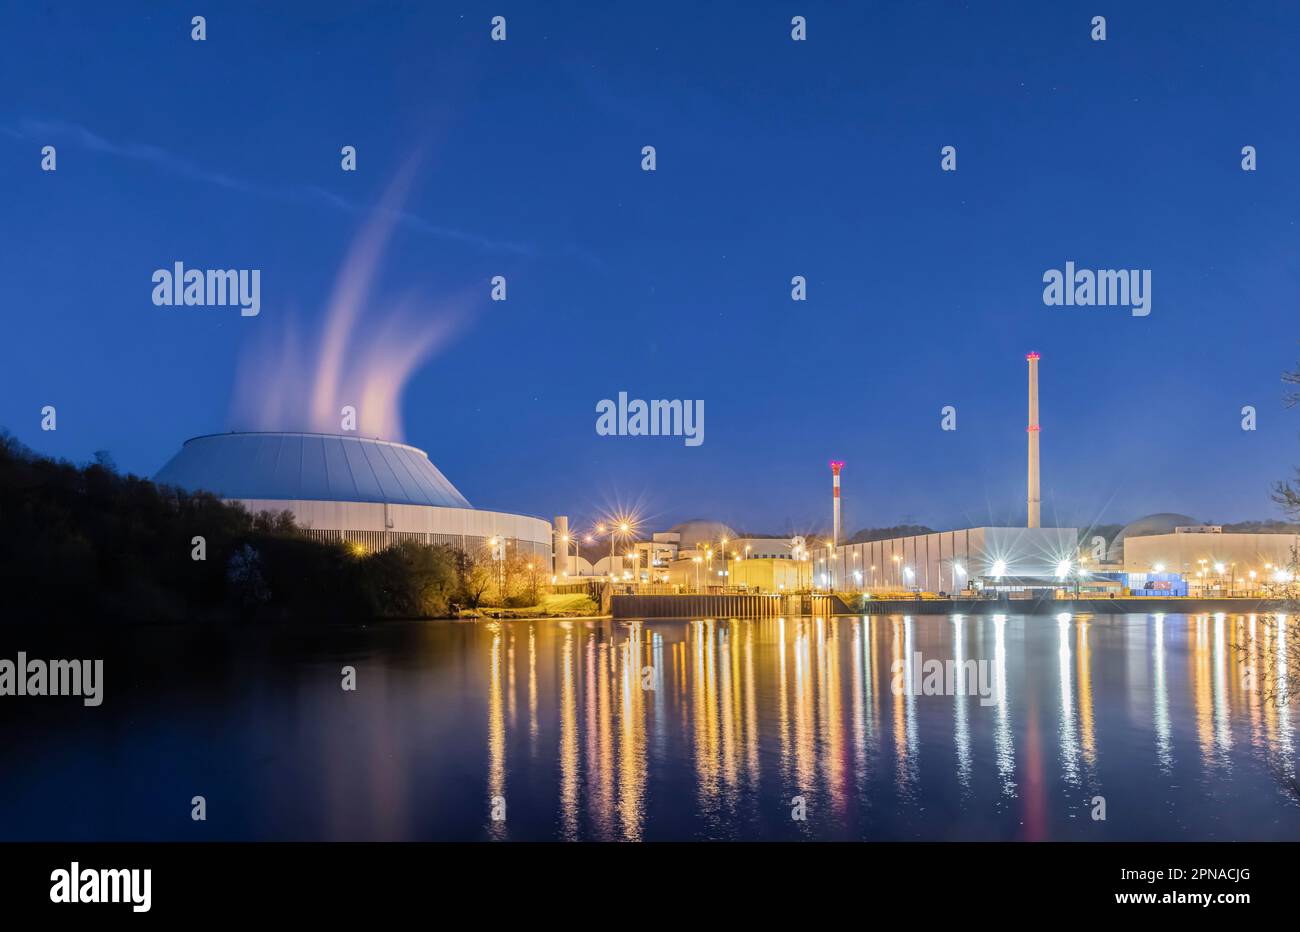 La centrale nucleare di Neckarwestheim va fuori linea, foto notturne con la costruzione del reattore, la torre di raffreddamento e il fiume Neckar, il reattore GKN 2 è uno dei Foto Stock